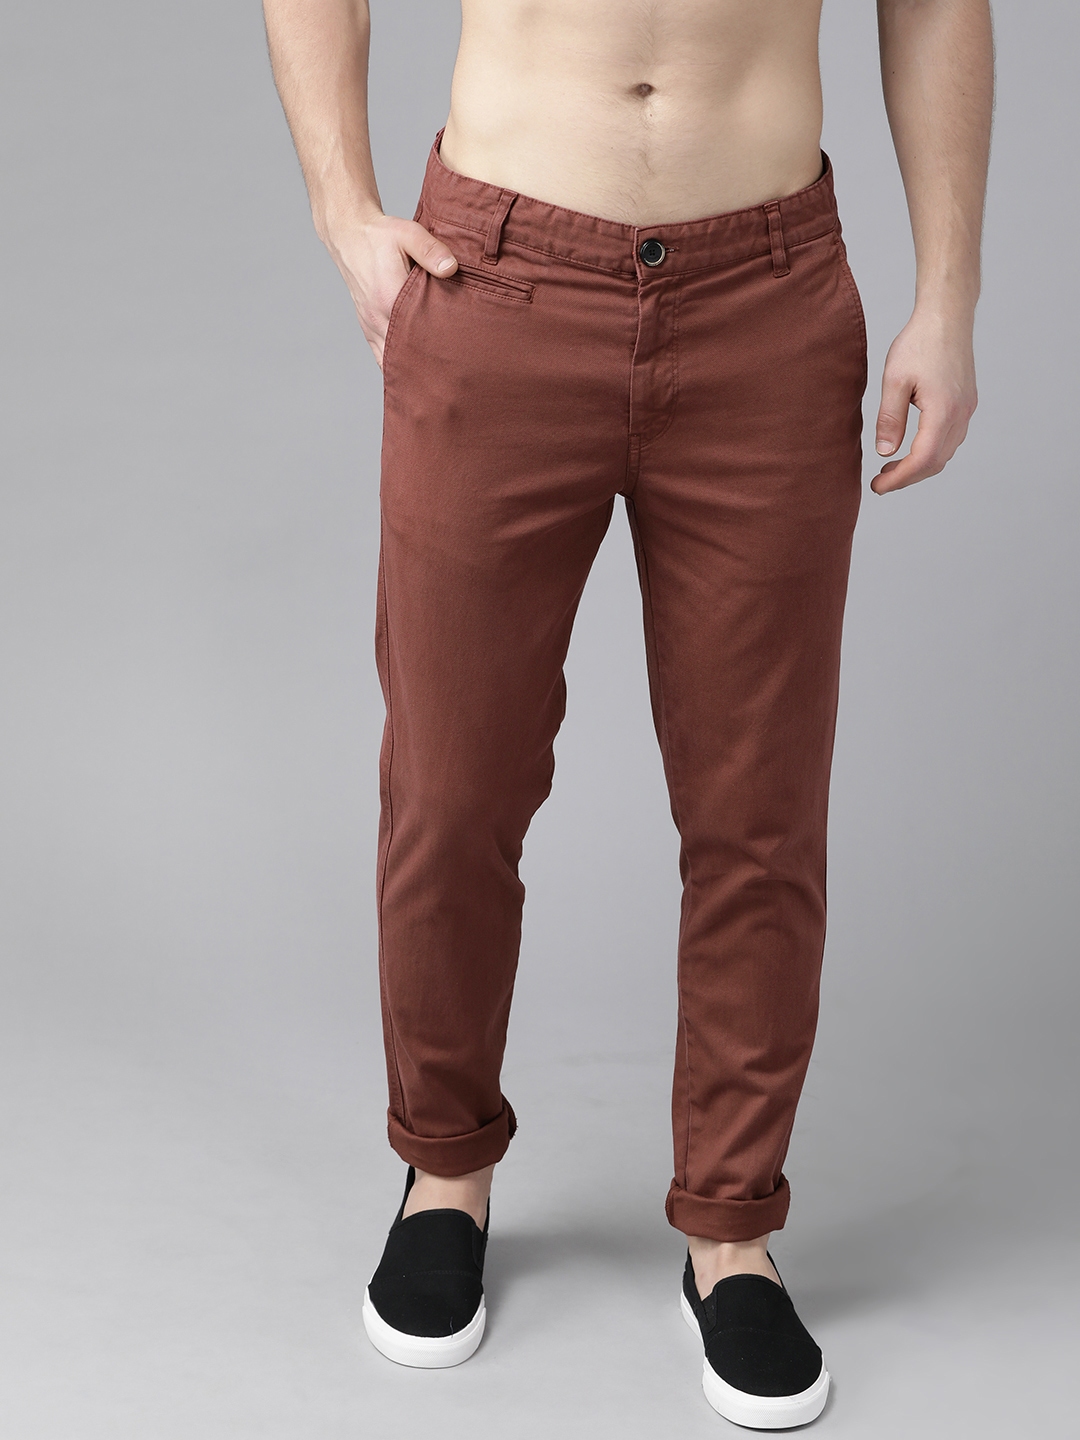 Buy Roadster Men Rust Brown Regular Fit Solid Regular Trousers ...